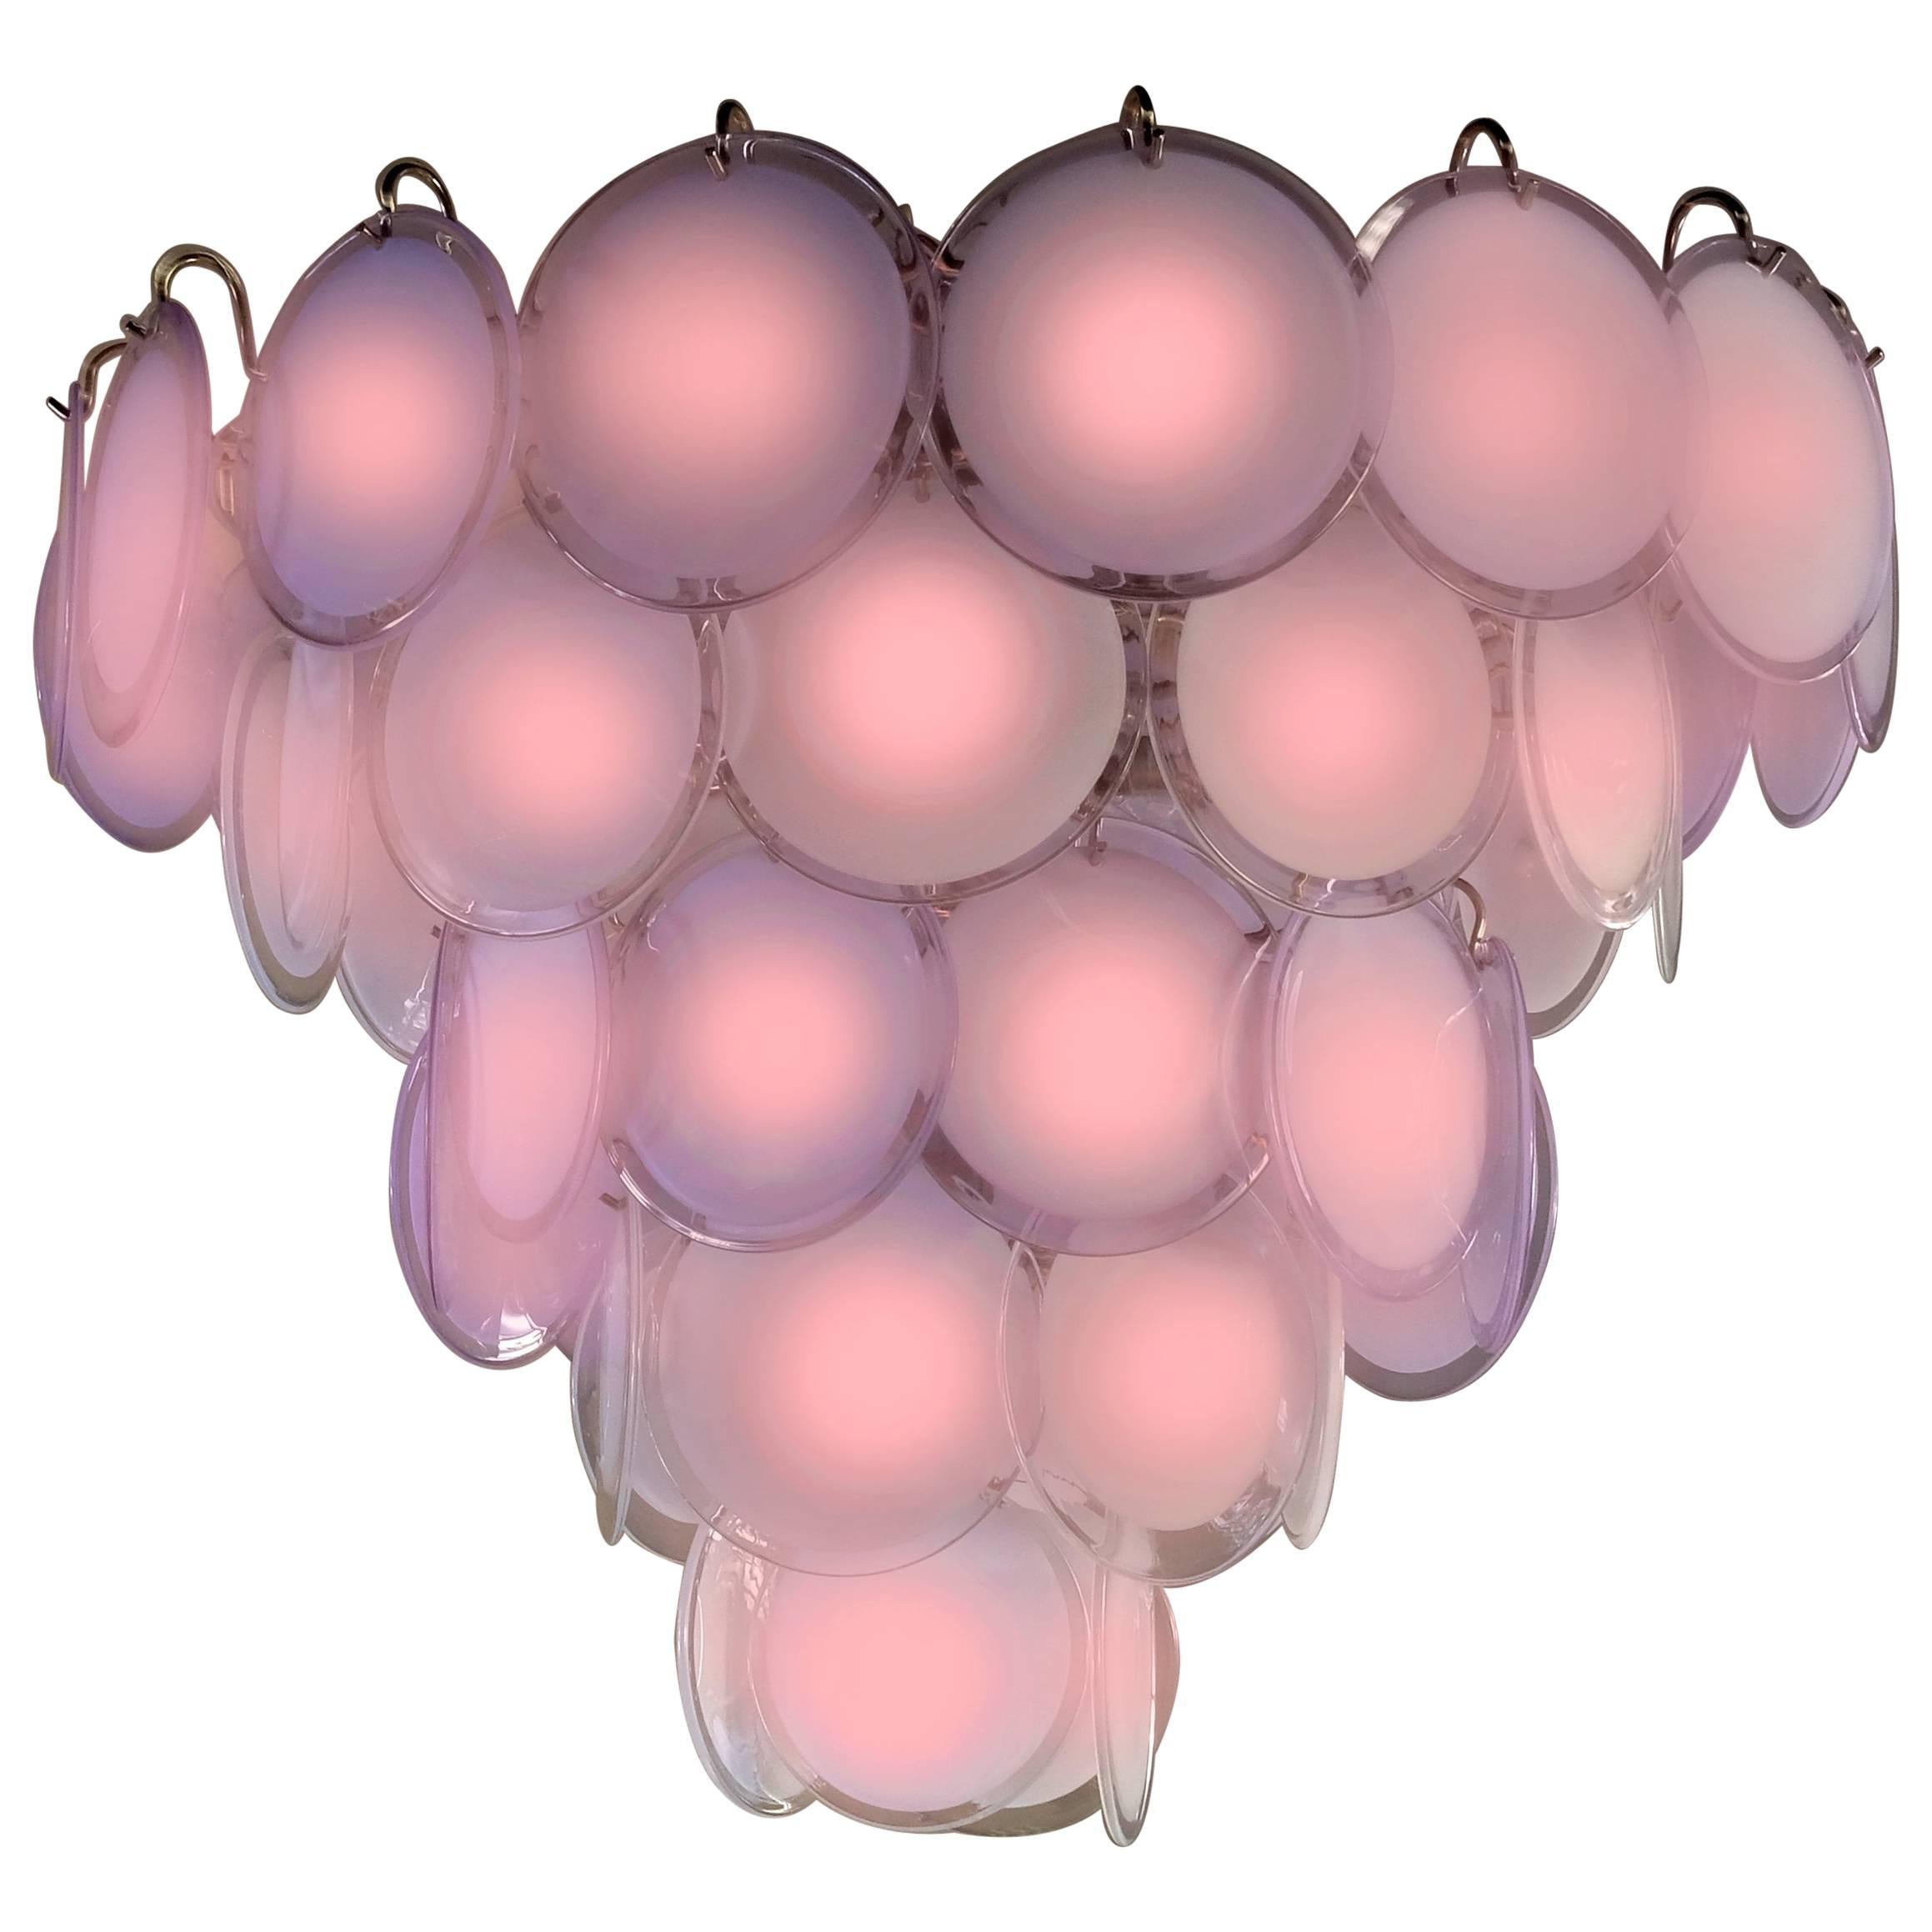 Spektakuläres Paar Vistosi-Kronleuchter mit jeweils 50 rosafarbenen Murano-Scheiben.
Erhältlich auch mit einer weißen oder bernsteinfarbenen Scheibe.
Chromgestell mit neun E14-Glühbirnen. Auf Anfrage an jedes elektrische System anpassbar.